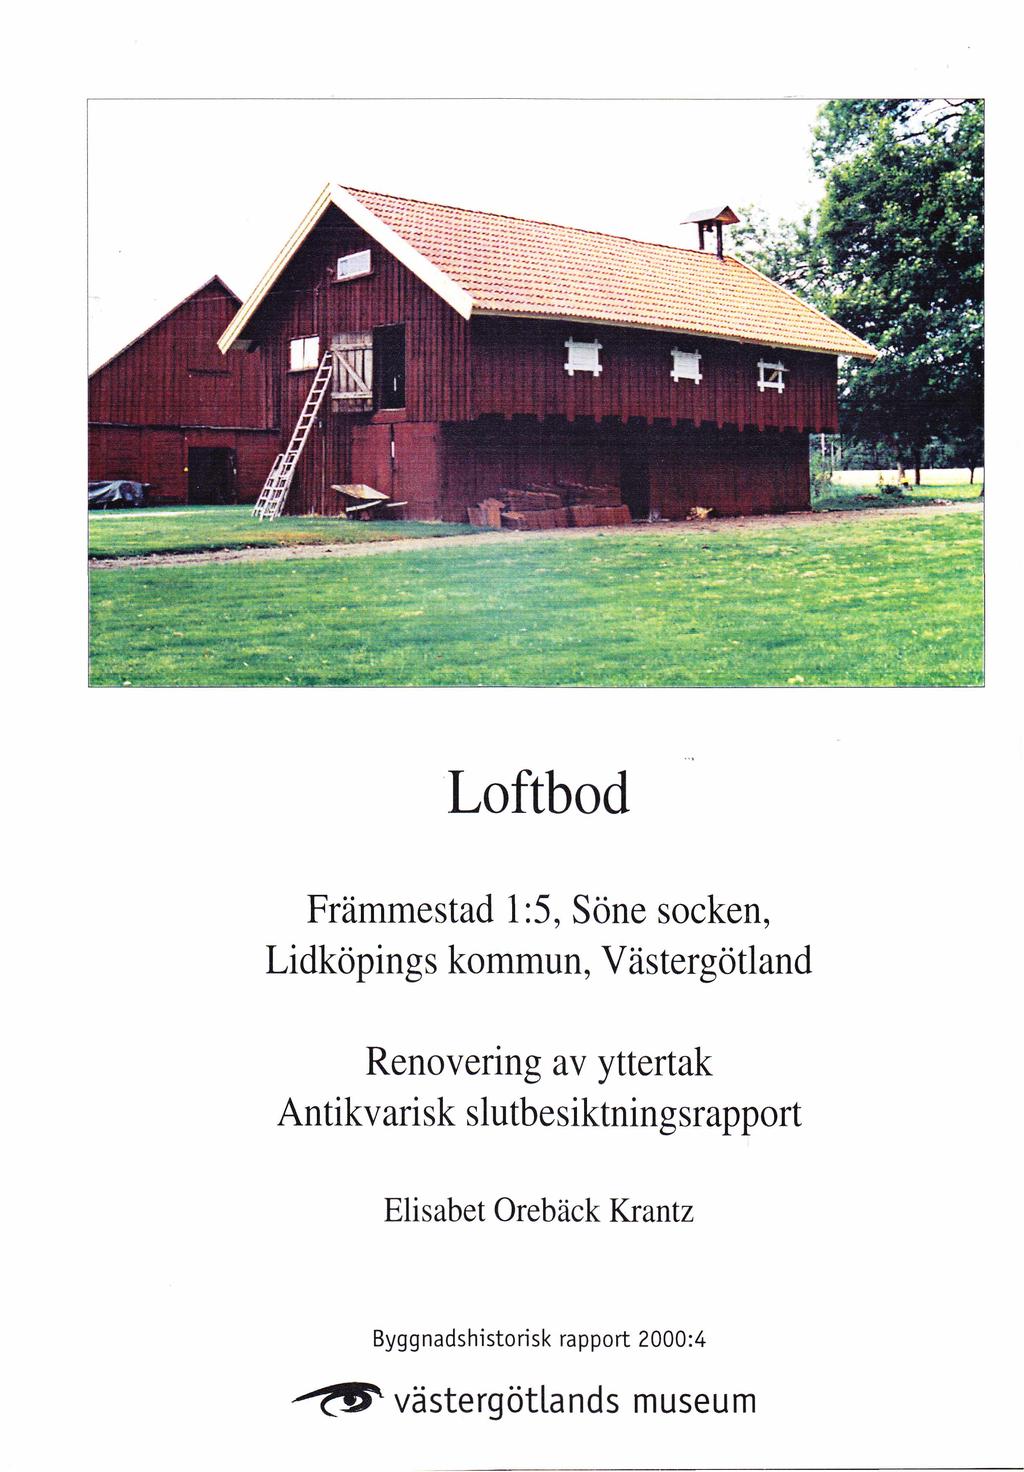 Loftbod, Söne socken, Lidköpings kommun, Västergötland Renovering av yttertak Antikvarisk